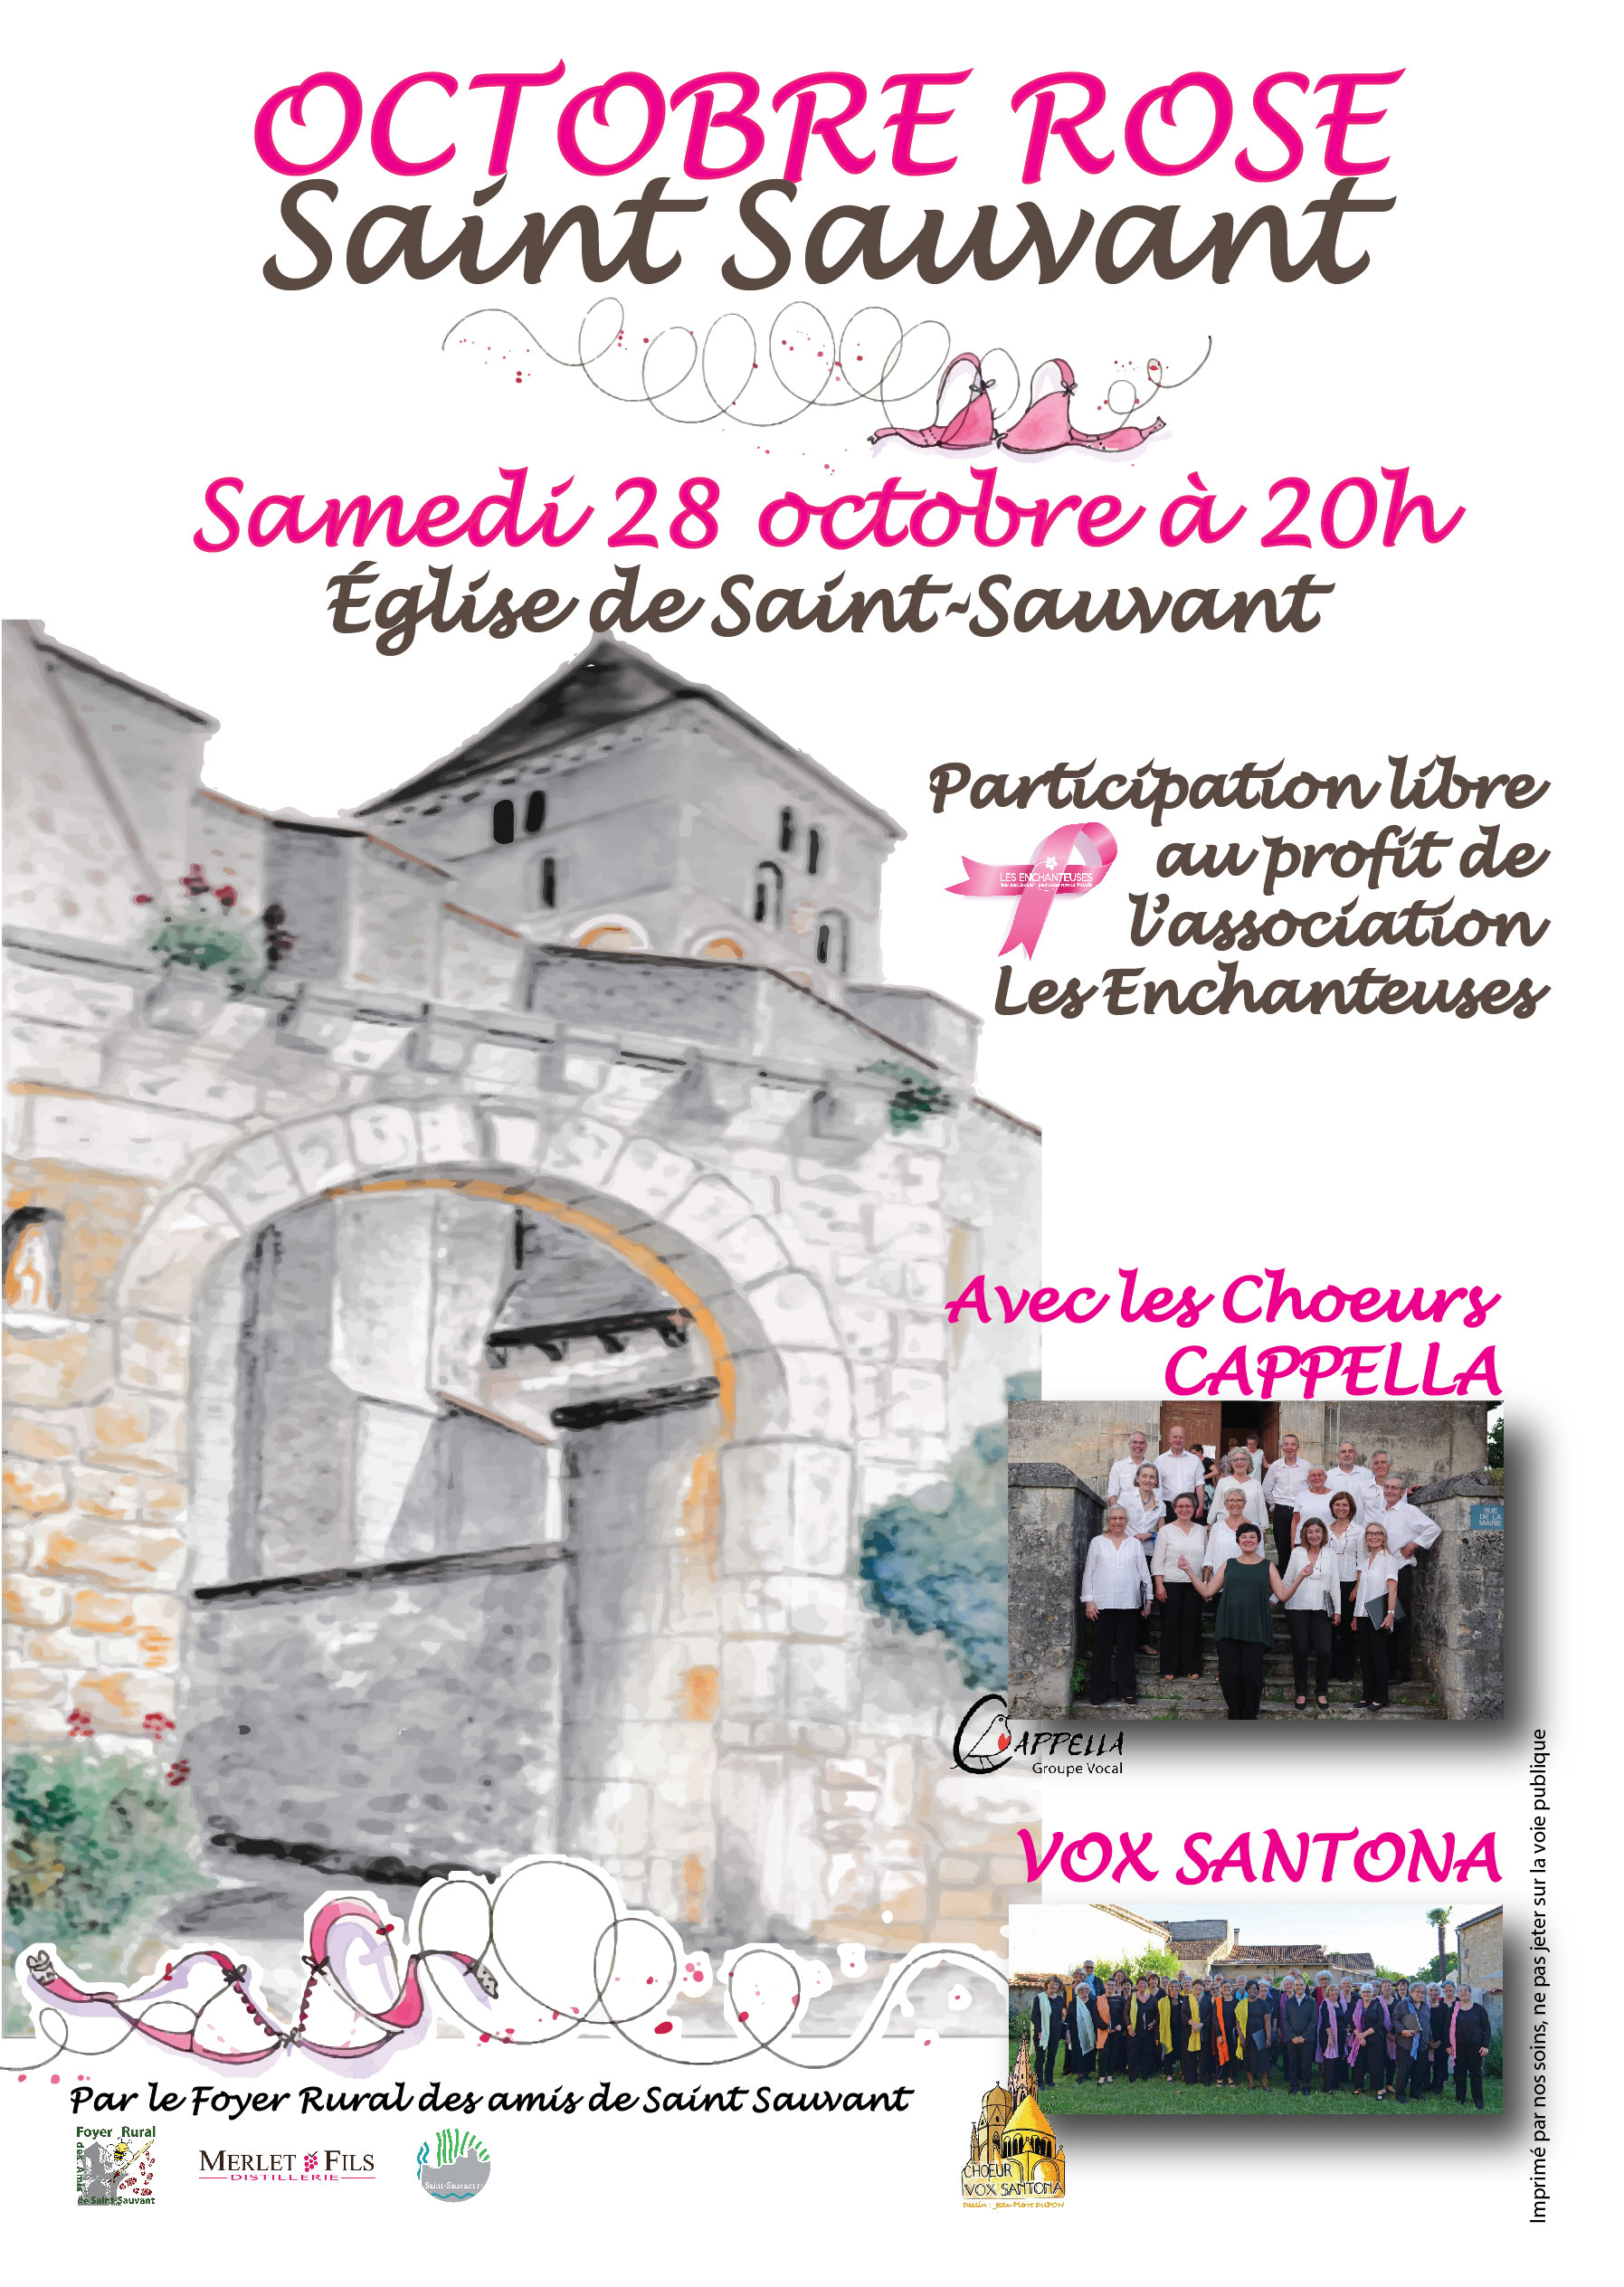 Octobre Rose à Saint-Sauvant-Samedi 28 octobre-20h